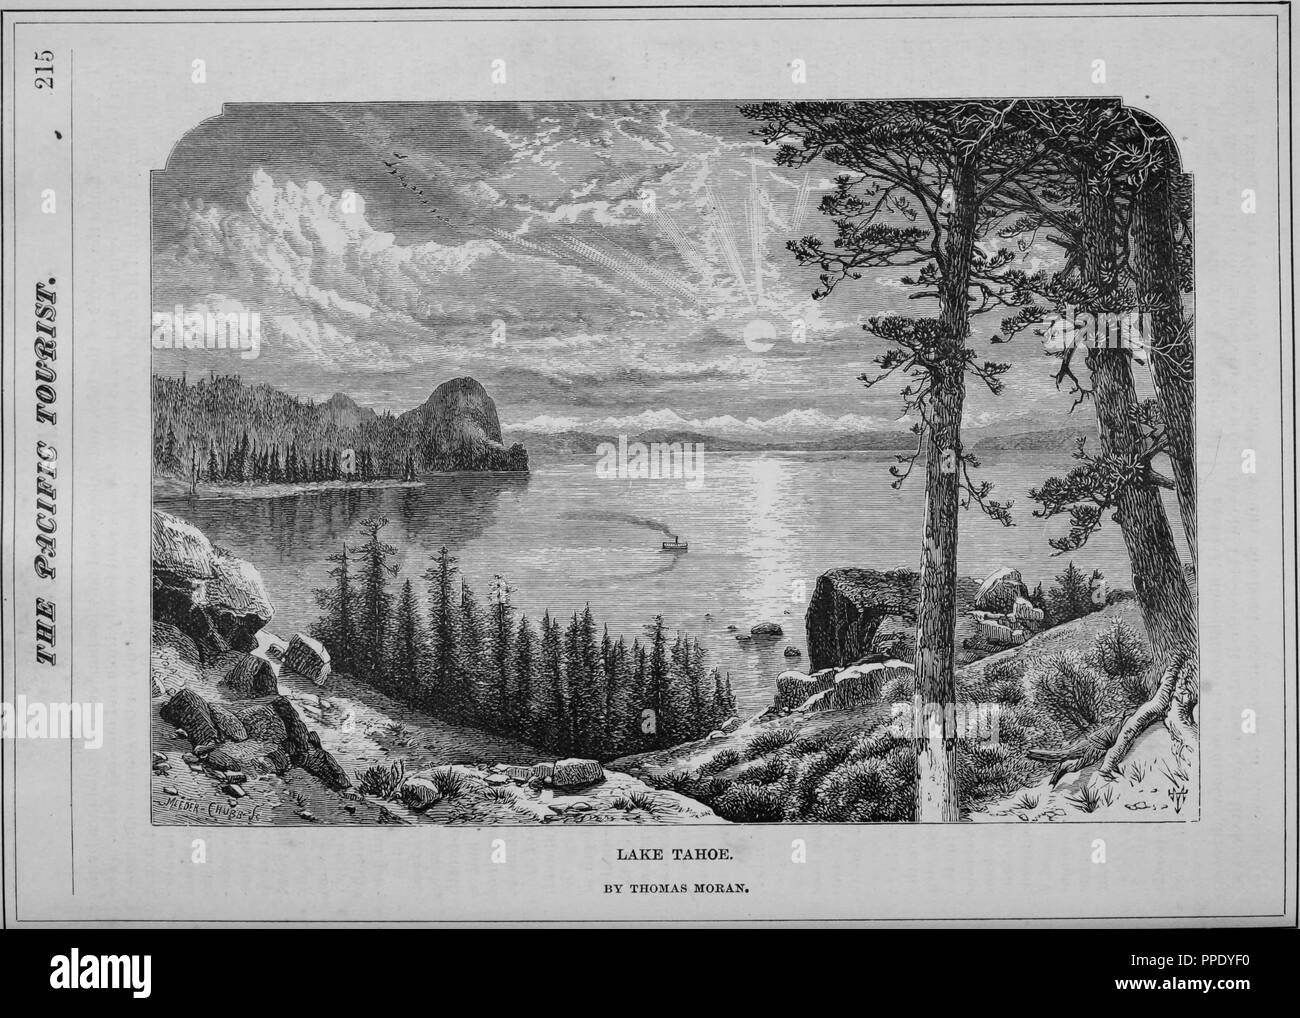 Gravur der Lake Tahoe, der grössten alpinen See in Nordamerika, aus dem Buch "Die Pacific Tourist', 1877. Mit freundlicher Genehmigung Internet Archive. () Stockfoto